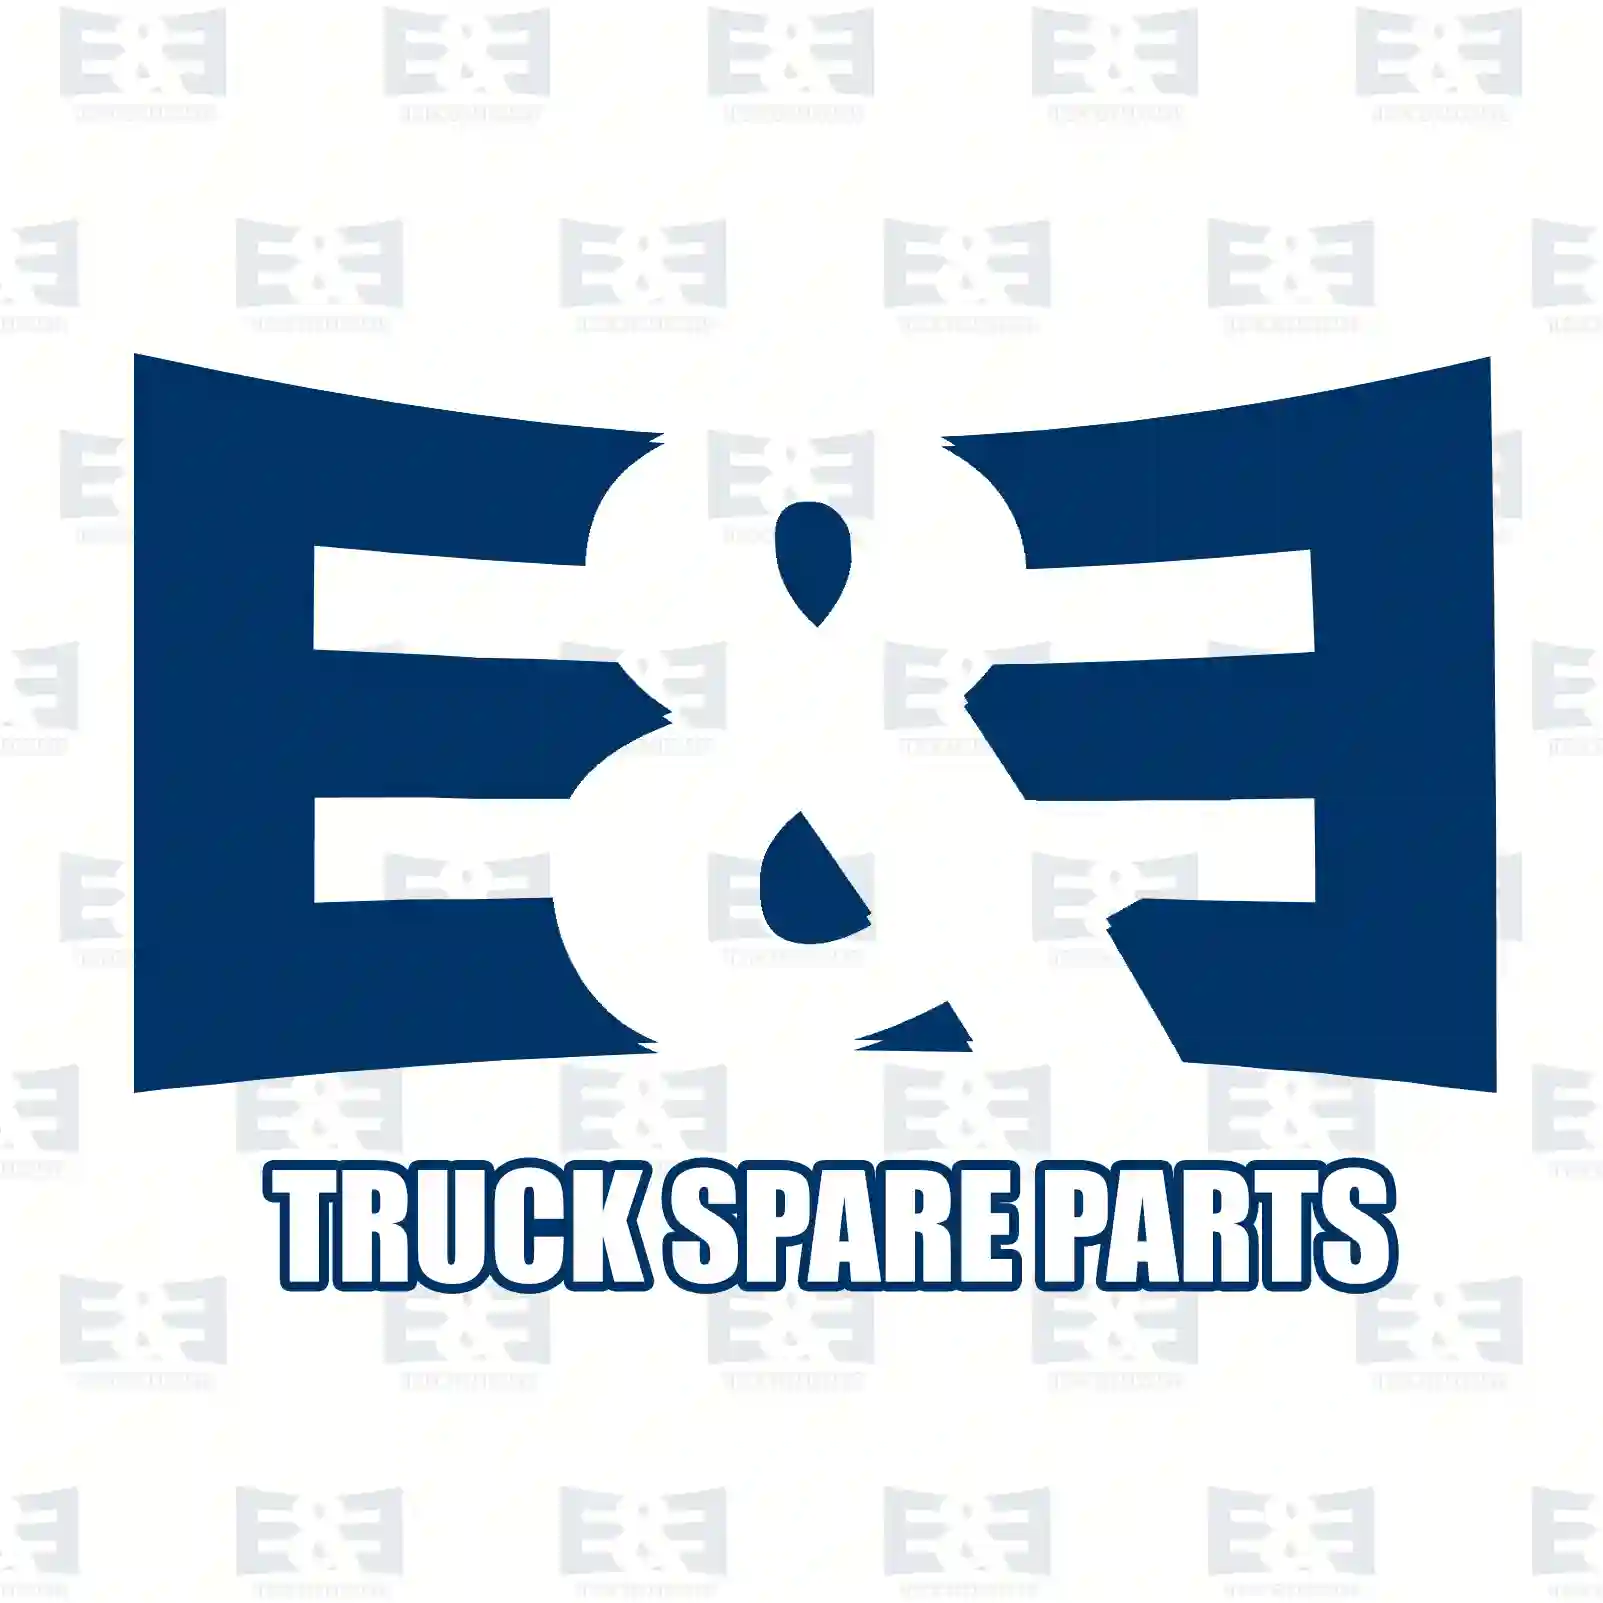 O-ring, 2E2286215, 06563413245, 85500013951, 87660600298 ||  2E2286215 E&E Truck Spare Parts | Truck Spare Parts, Auotomotive Spare Parts O-ring, 2E2286215, 06563413245, 85500013951, 87660600298 ||  2E2286215 E&E Truck Spare Parts | Truck Spare Parts, Auotomotive Spare Parts